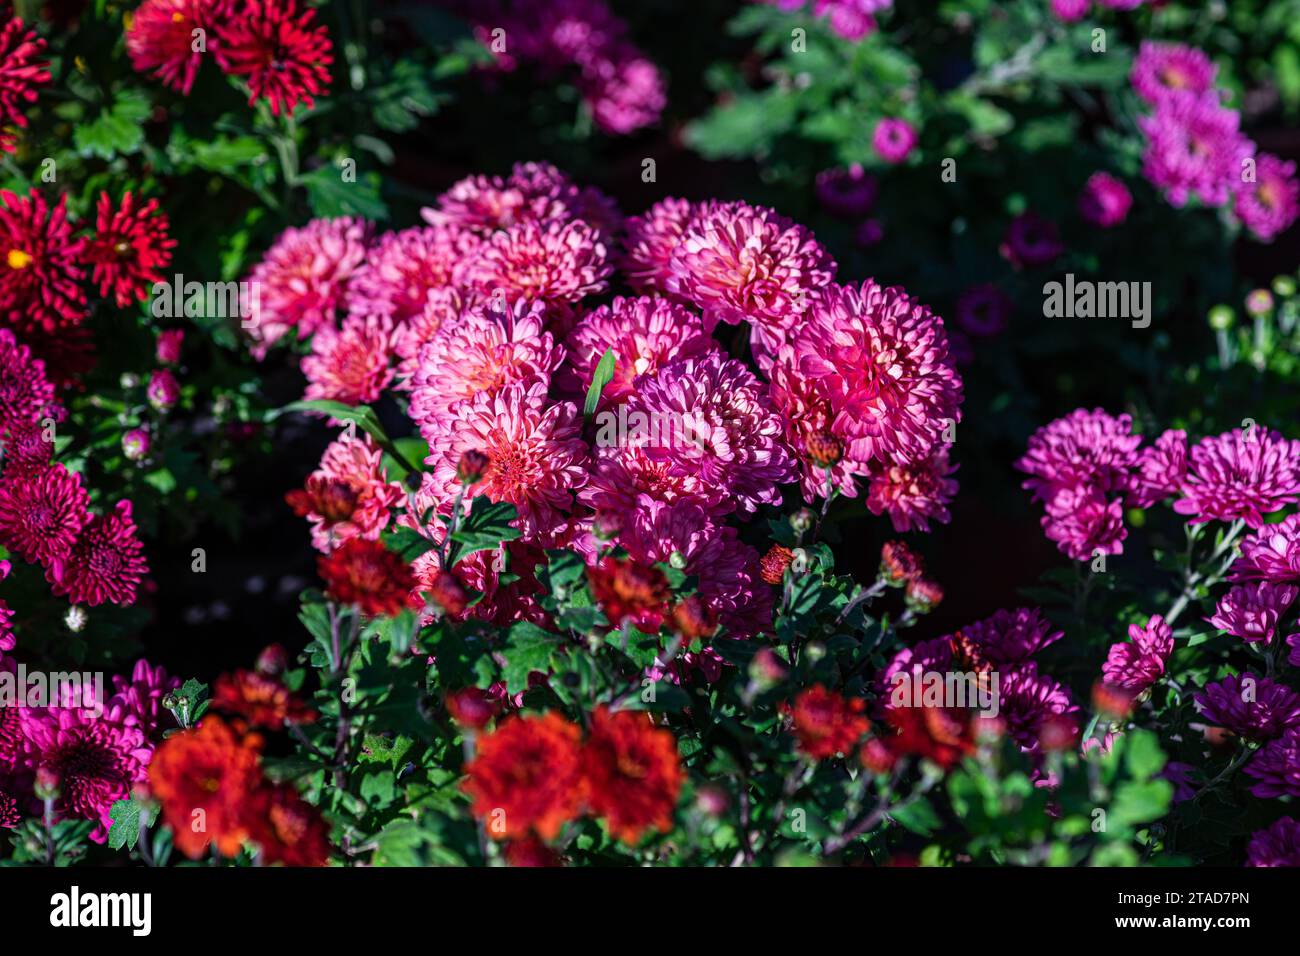 Fond automnal avec variété de fleurs violettes de chrysanthèmes dans le jardin Banque D'Images